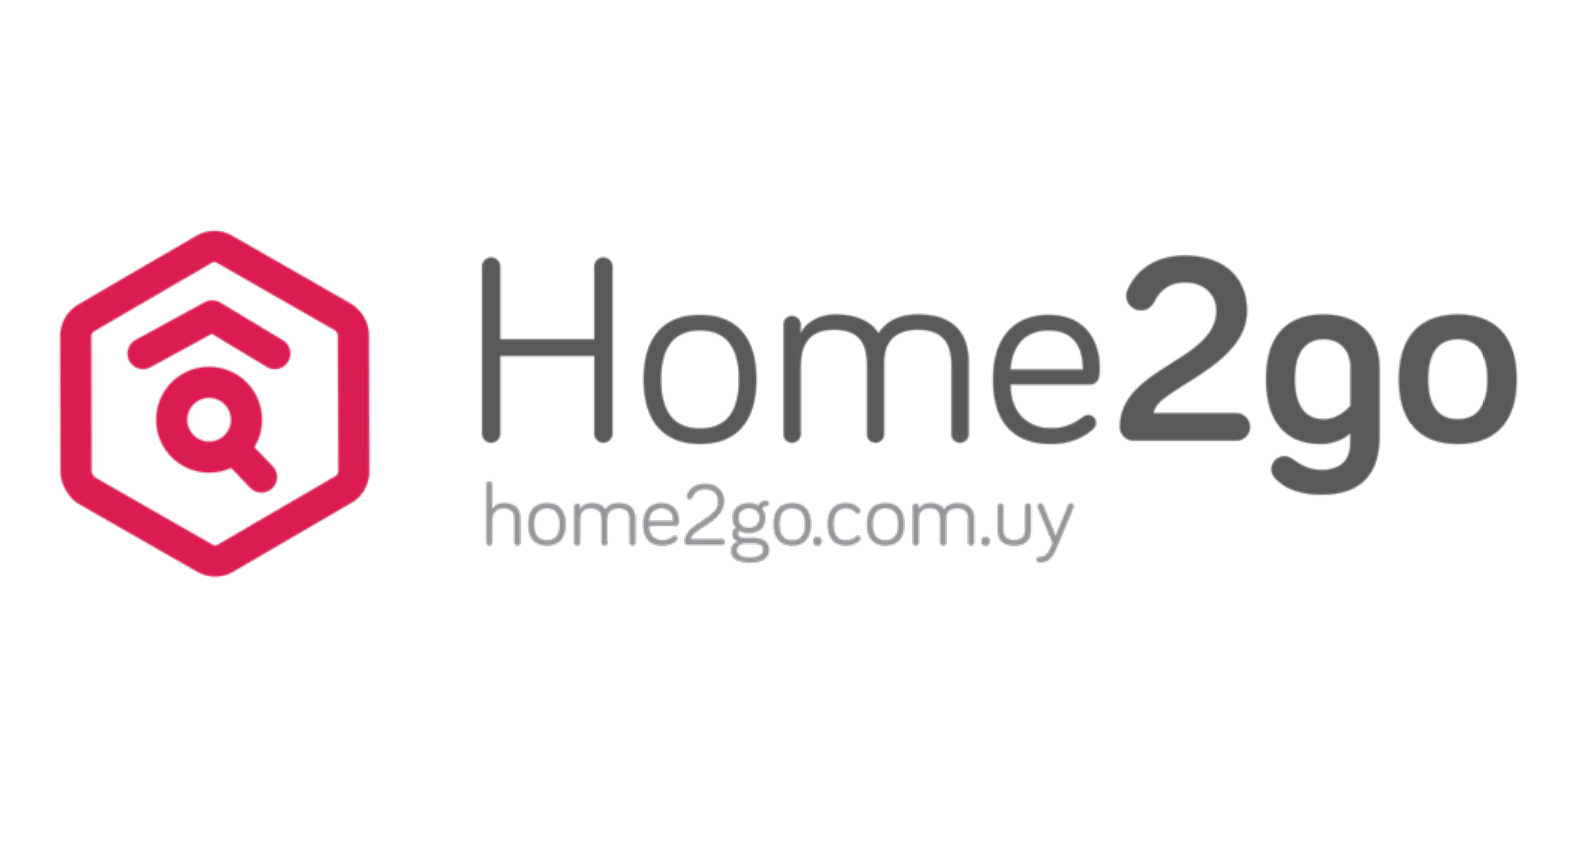 Home2go